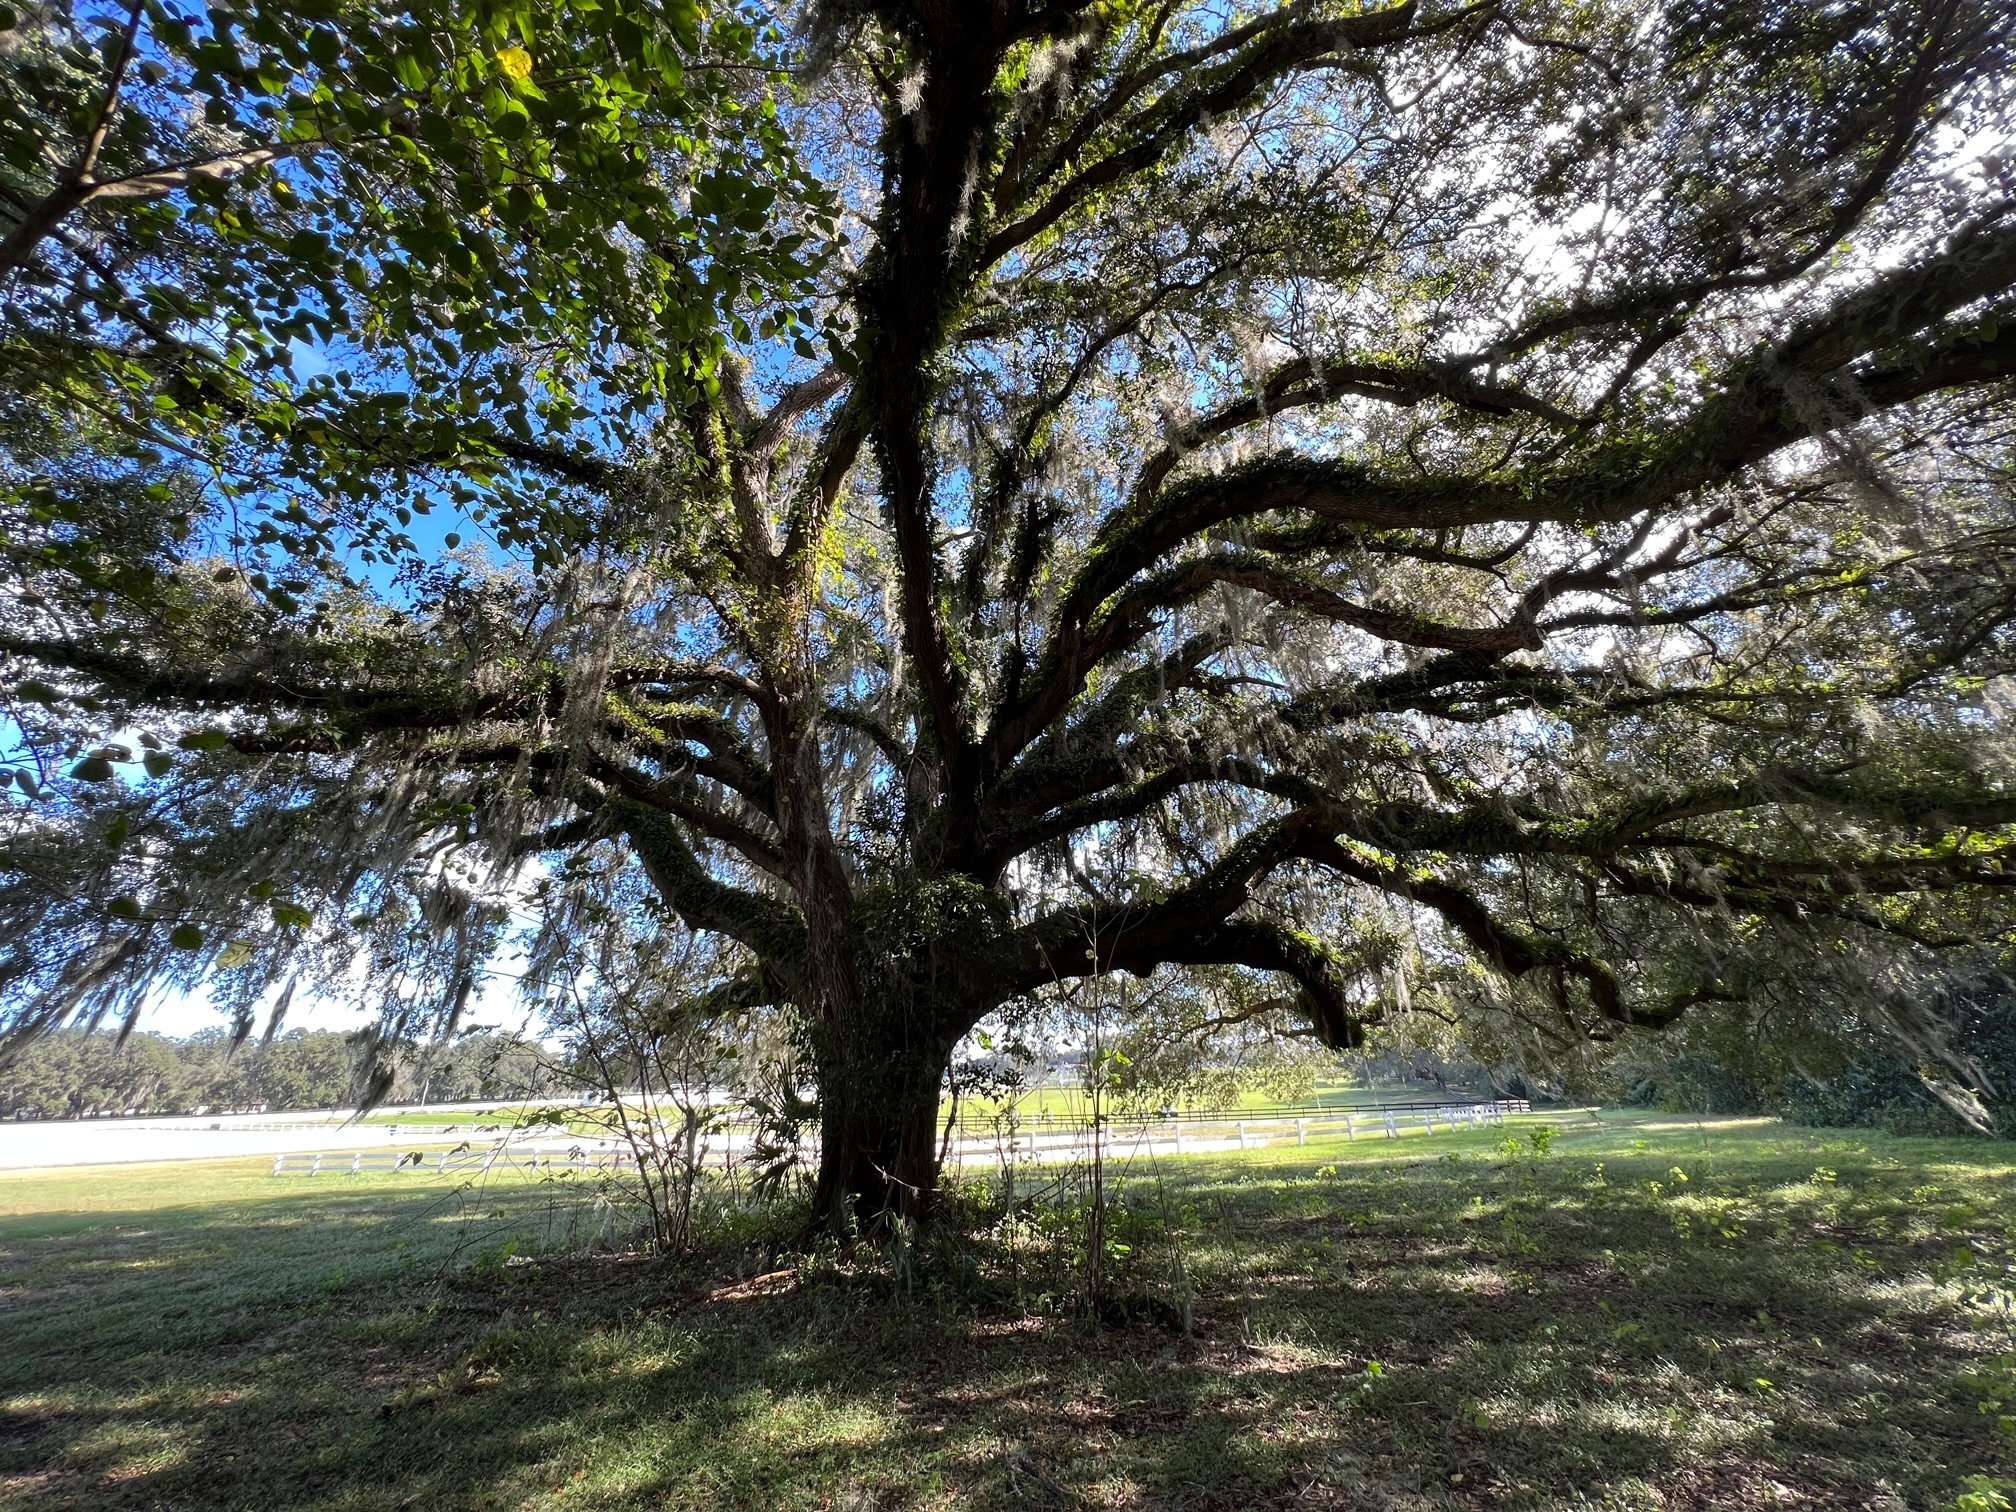 Oak Tree.jpg